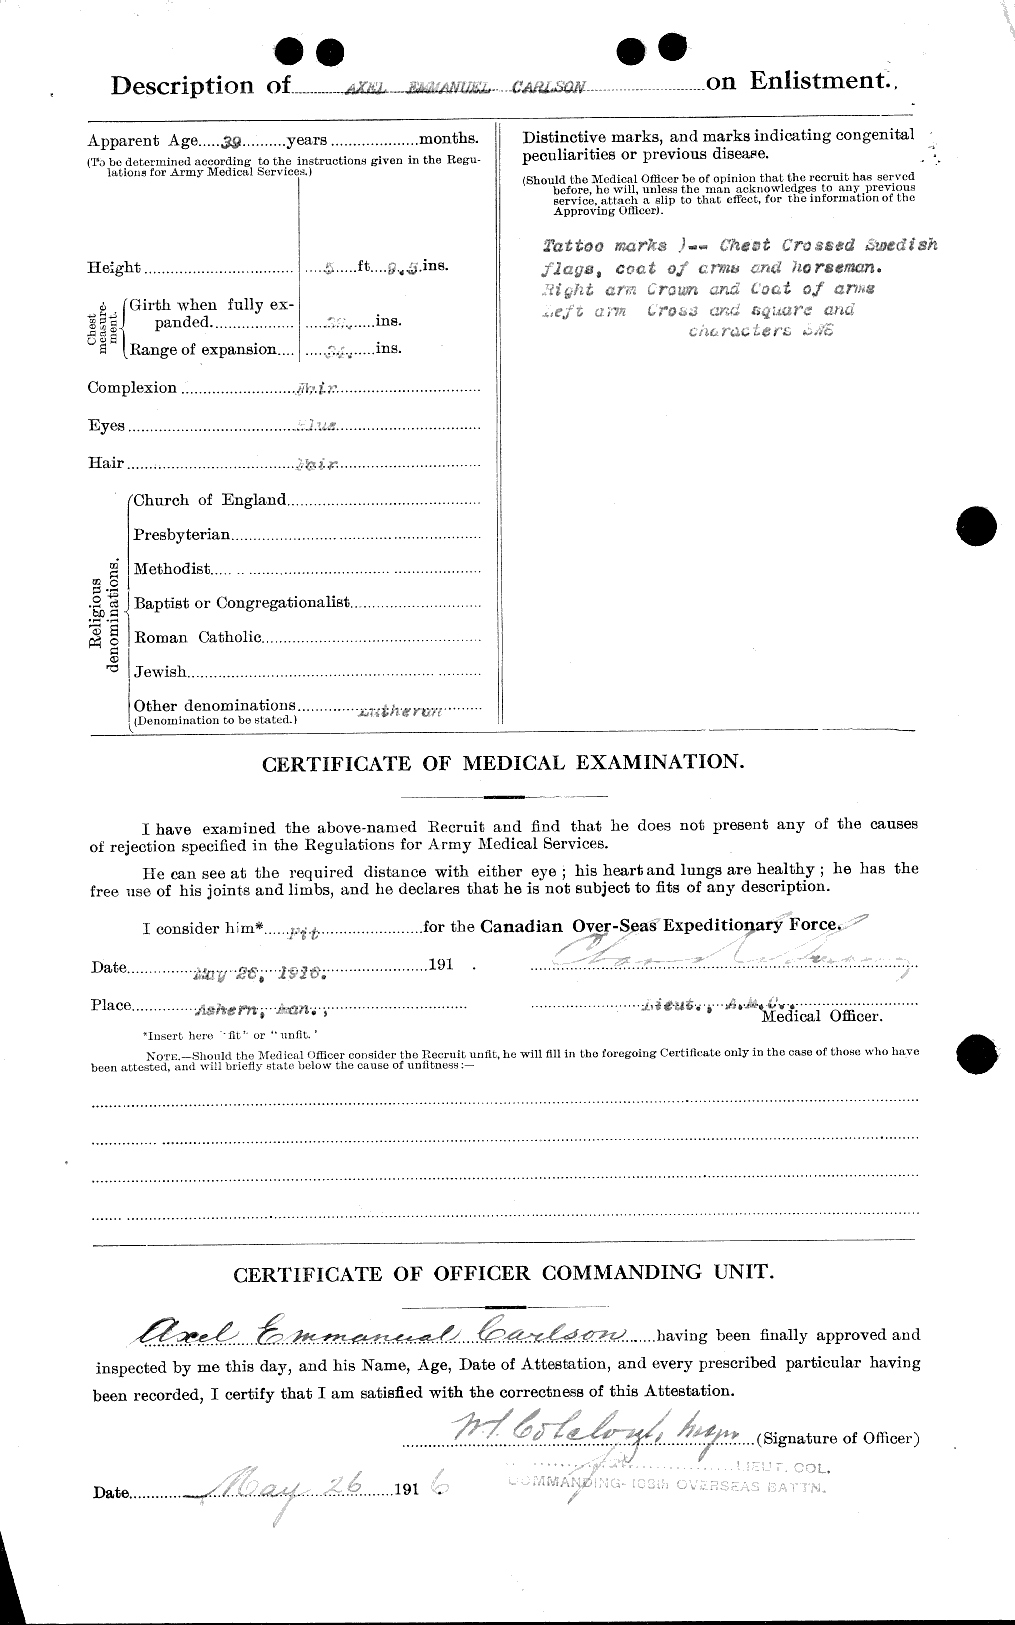 Dossiers du Personnel de la Première Guerre mondiale - CEC 004489b